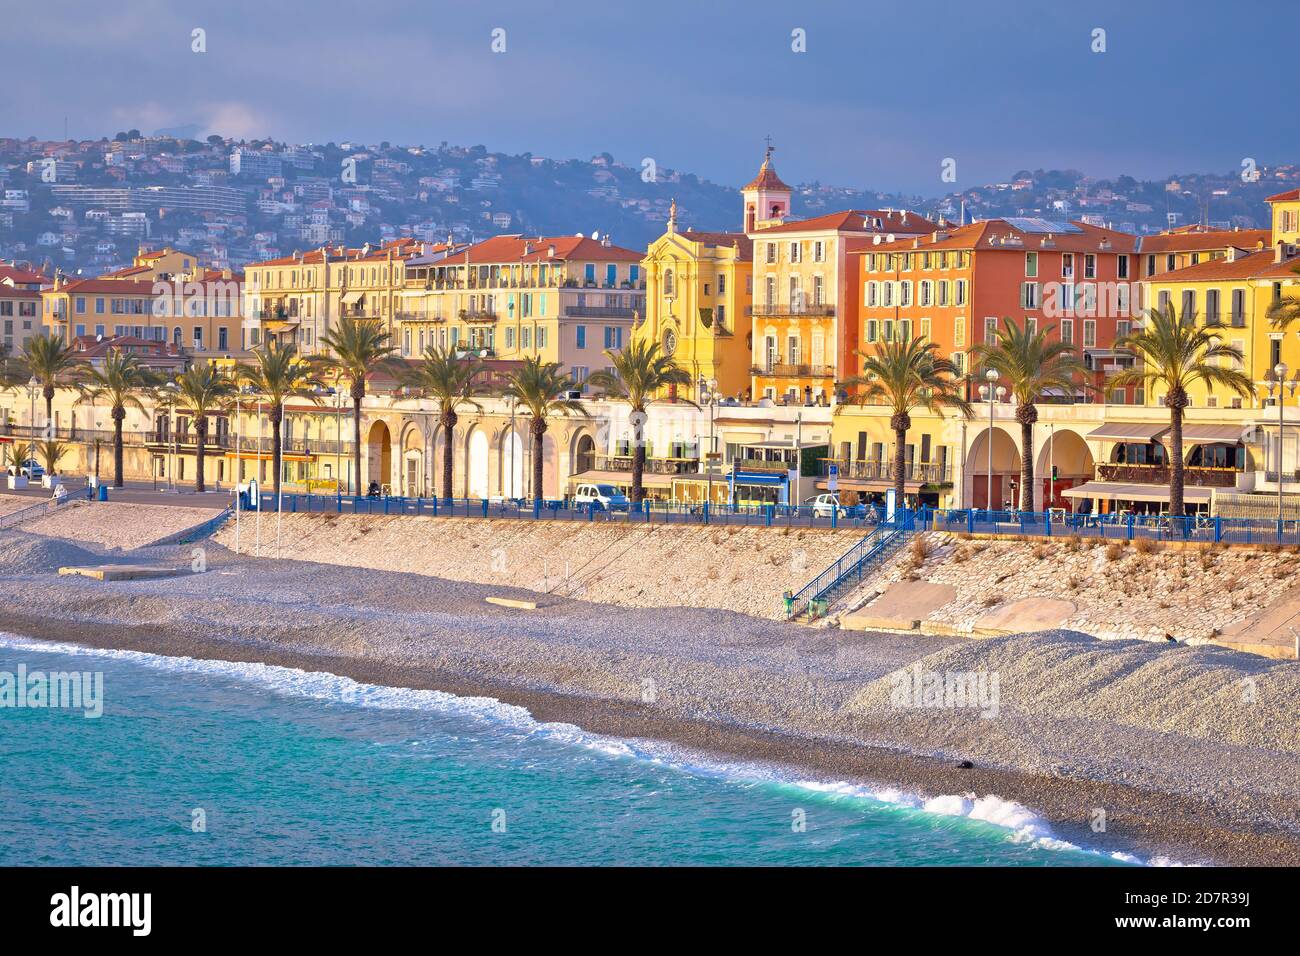 Ville de Nice Promenade des Anglais et vue sur le front de mer, côte d'azur, Alpes Maritimes département de France Banque D'Images